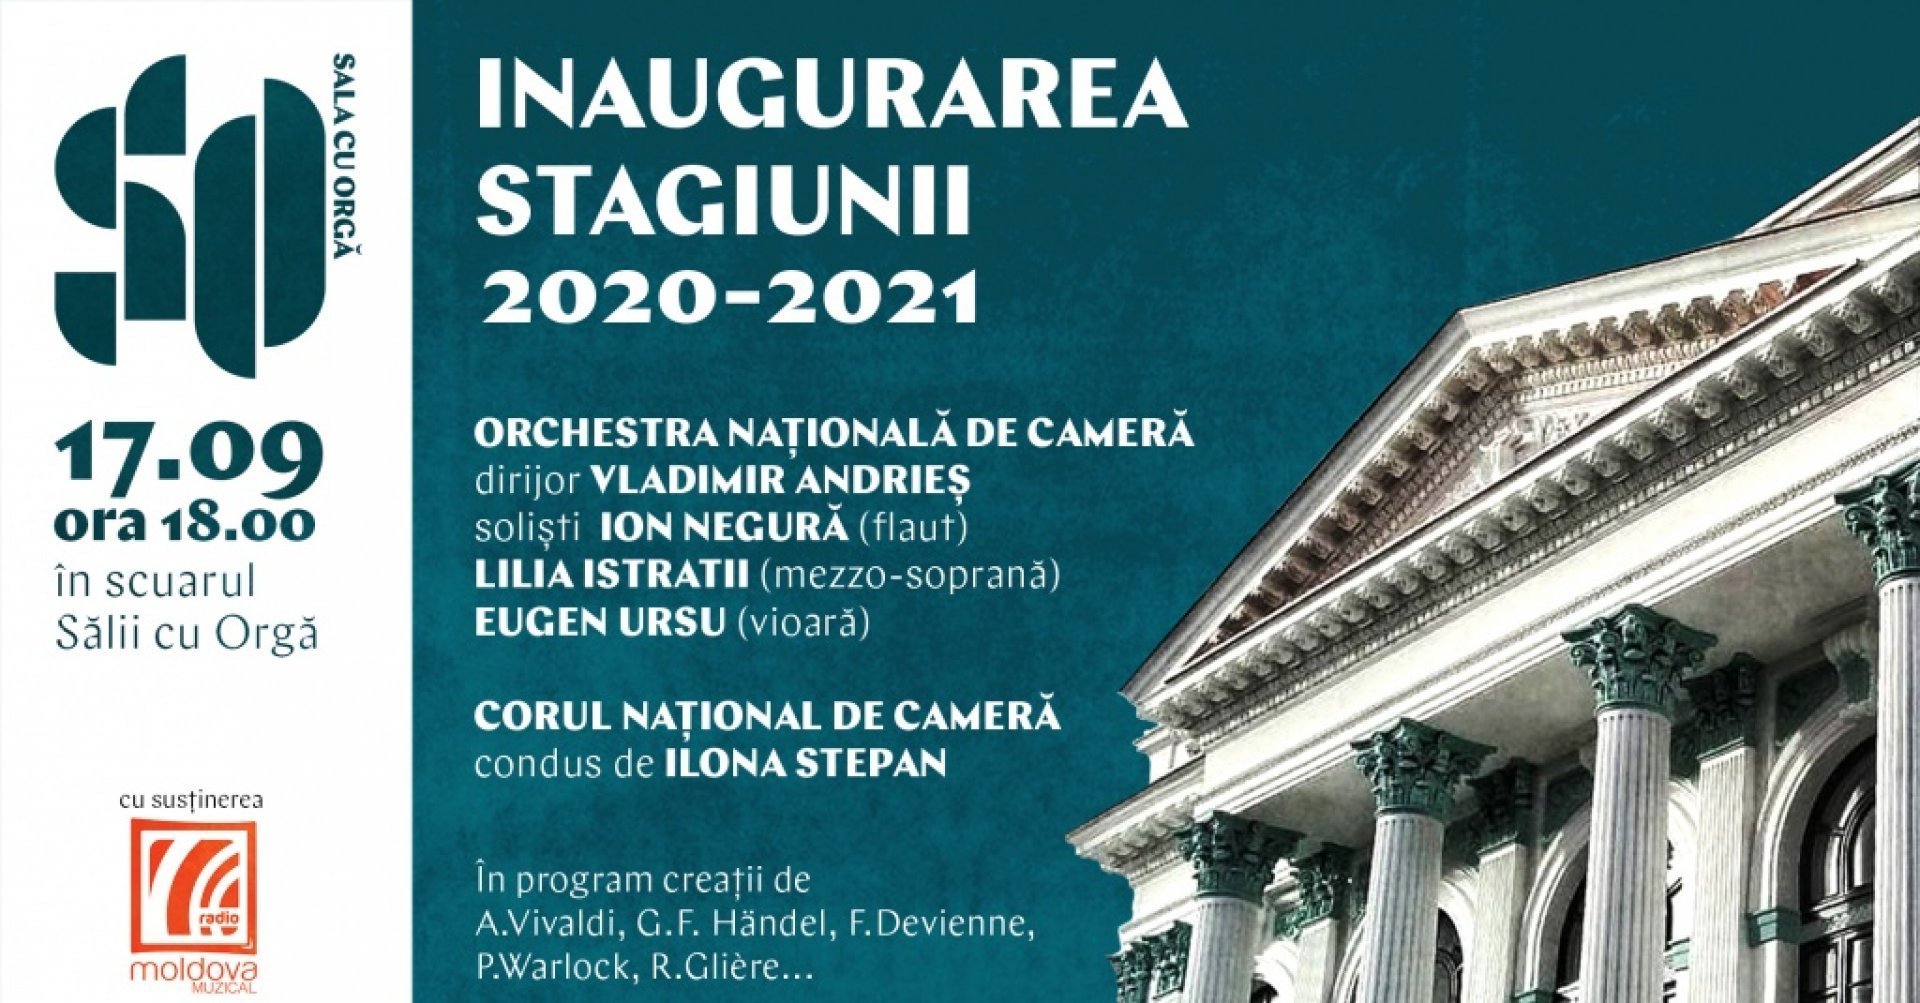 INAUGURAREA STAGIUNII 2020-2021